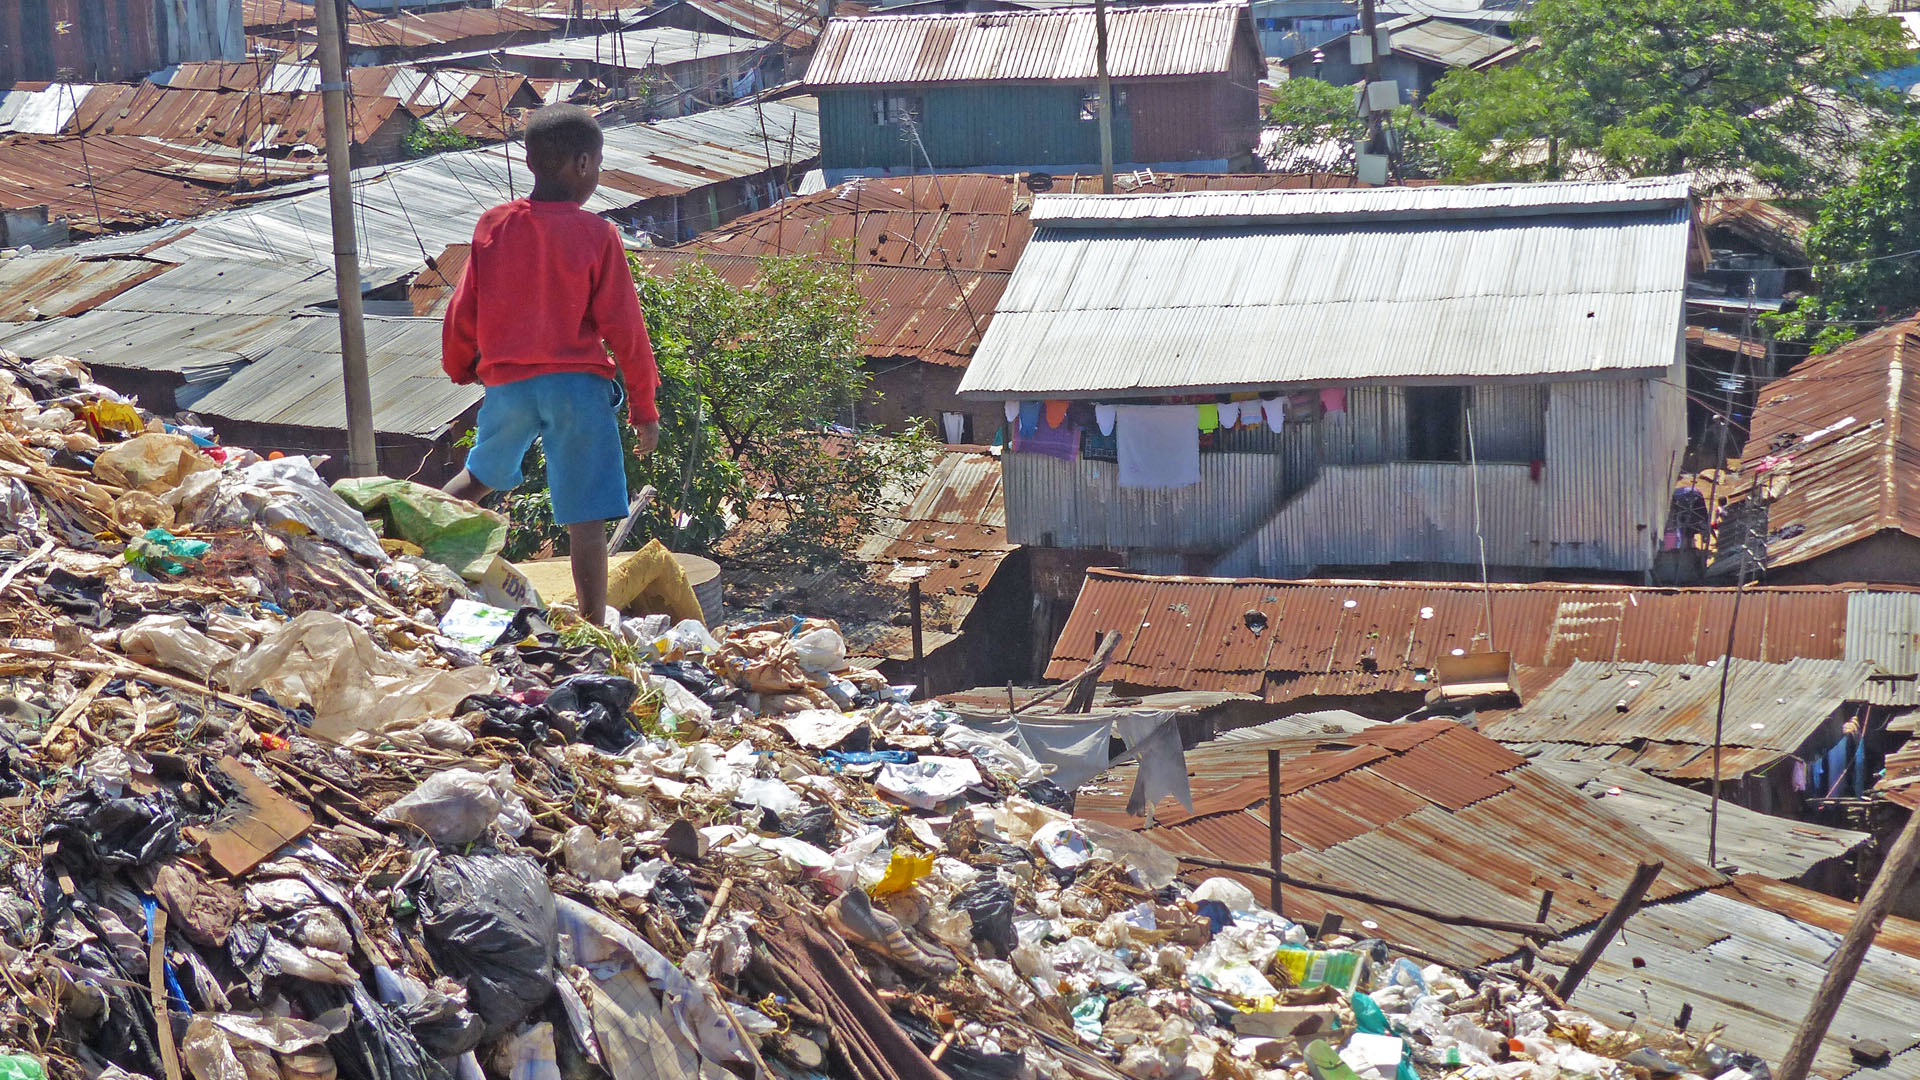 Berge von Müll und Hütten aus Wellblech: So sieht es in den Elendsvierteln von Nairobi aus